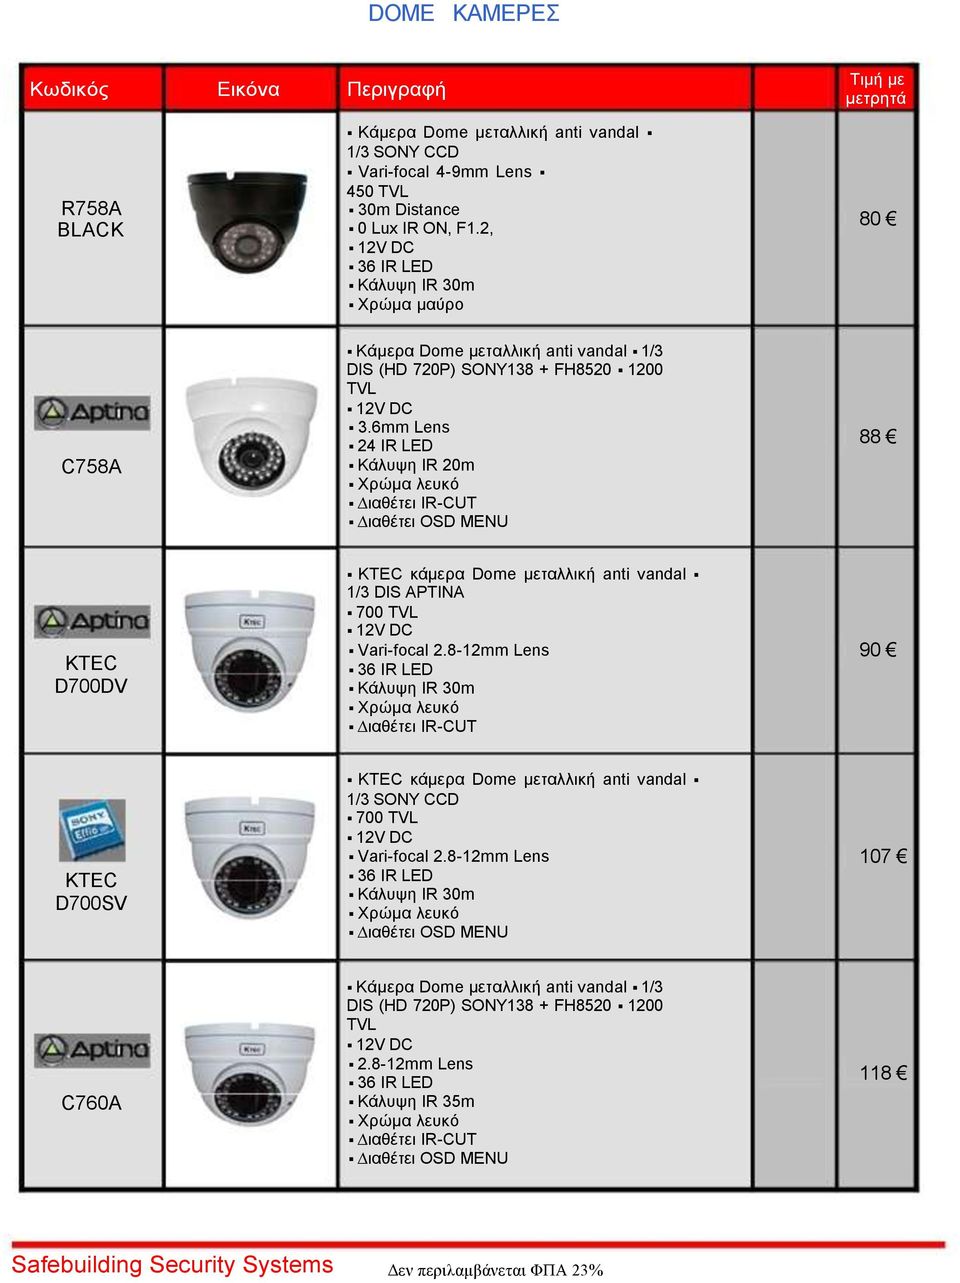 6mm Lens 24 IR LED Κάλυψη IR 20m ιαθέτει IR-CUT ιαθέτει OSD MENU 88 D700DV κάμερα Dome μεταλλική anti vandal 1/3 DIS APTINA Vari-focal 2.